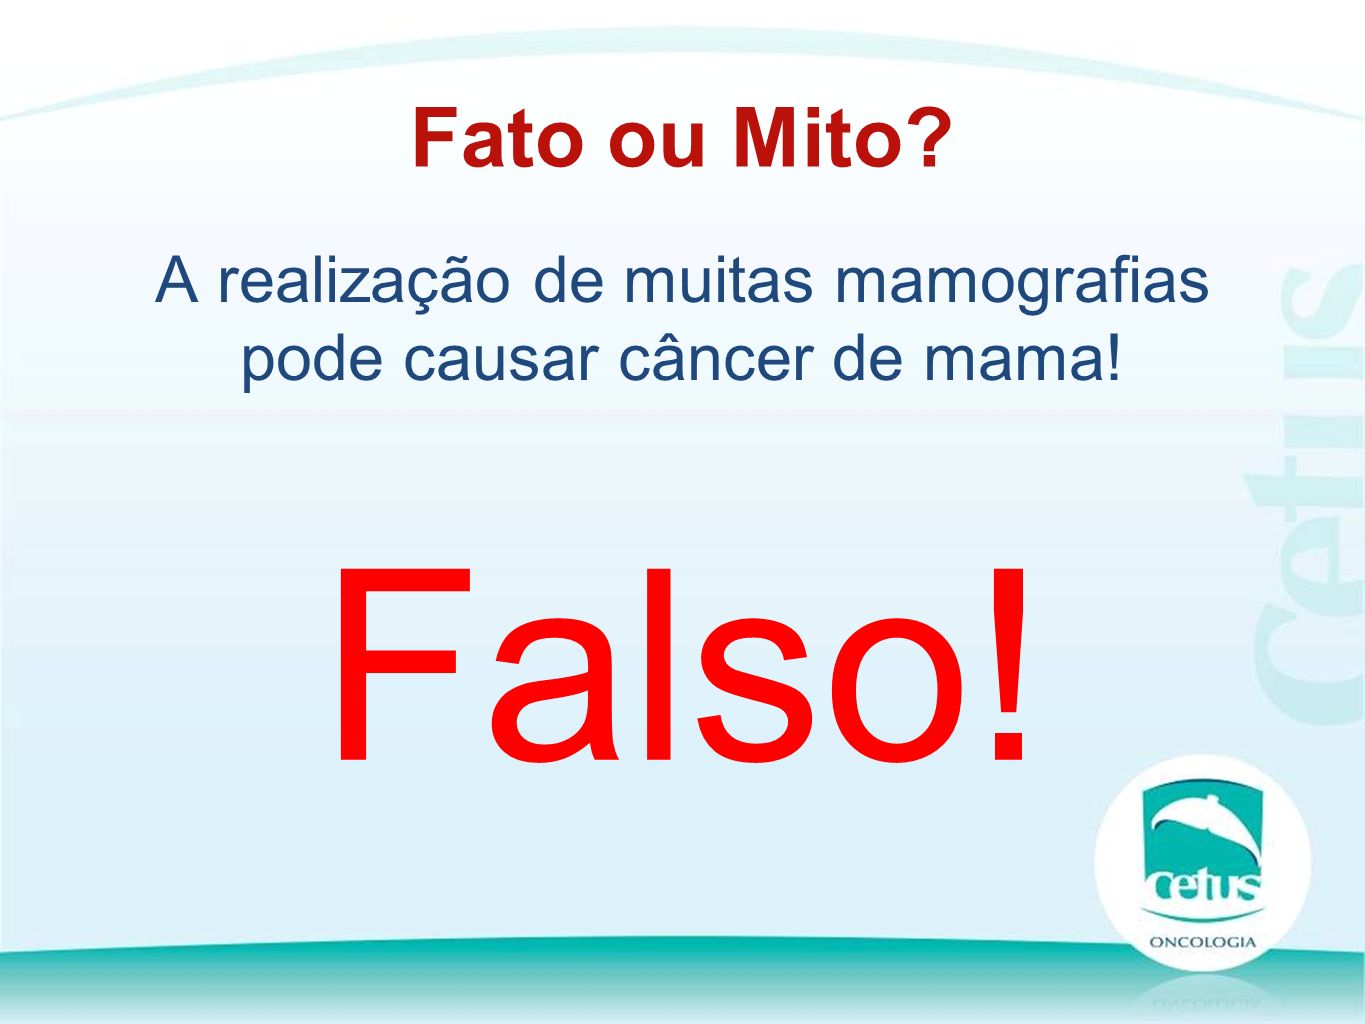 A realização de muitas mamografias pode causar câncer de mama! Fato ou Mito Falso!